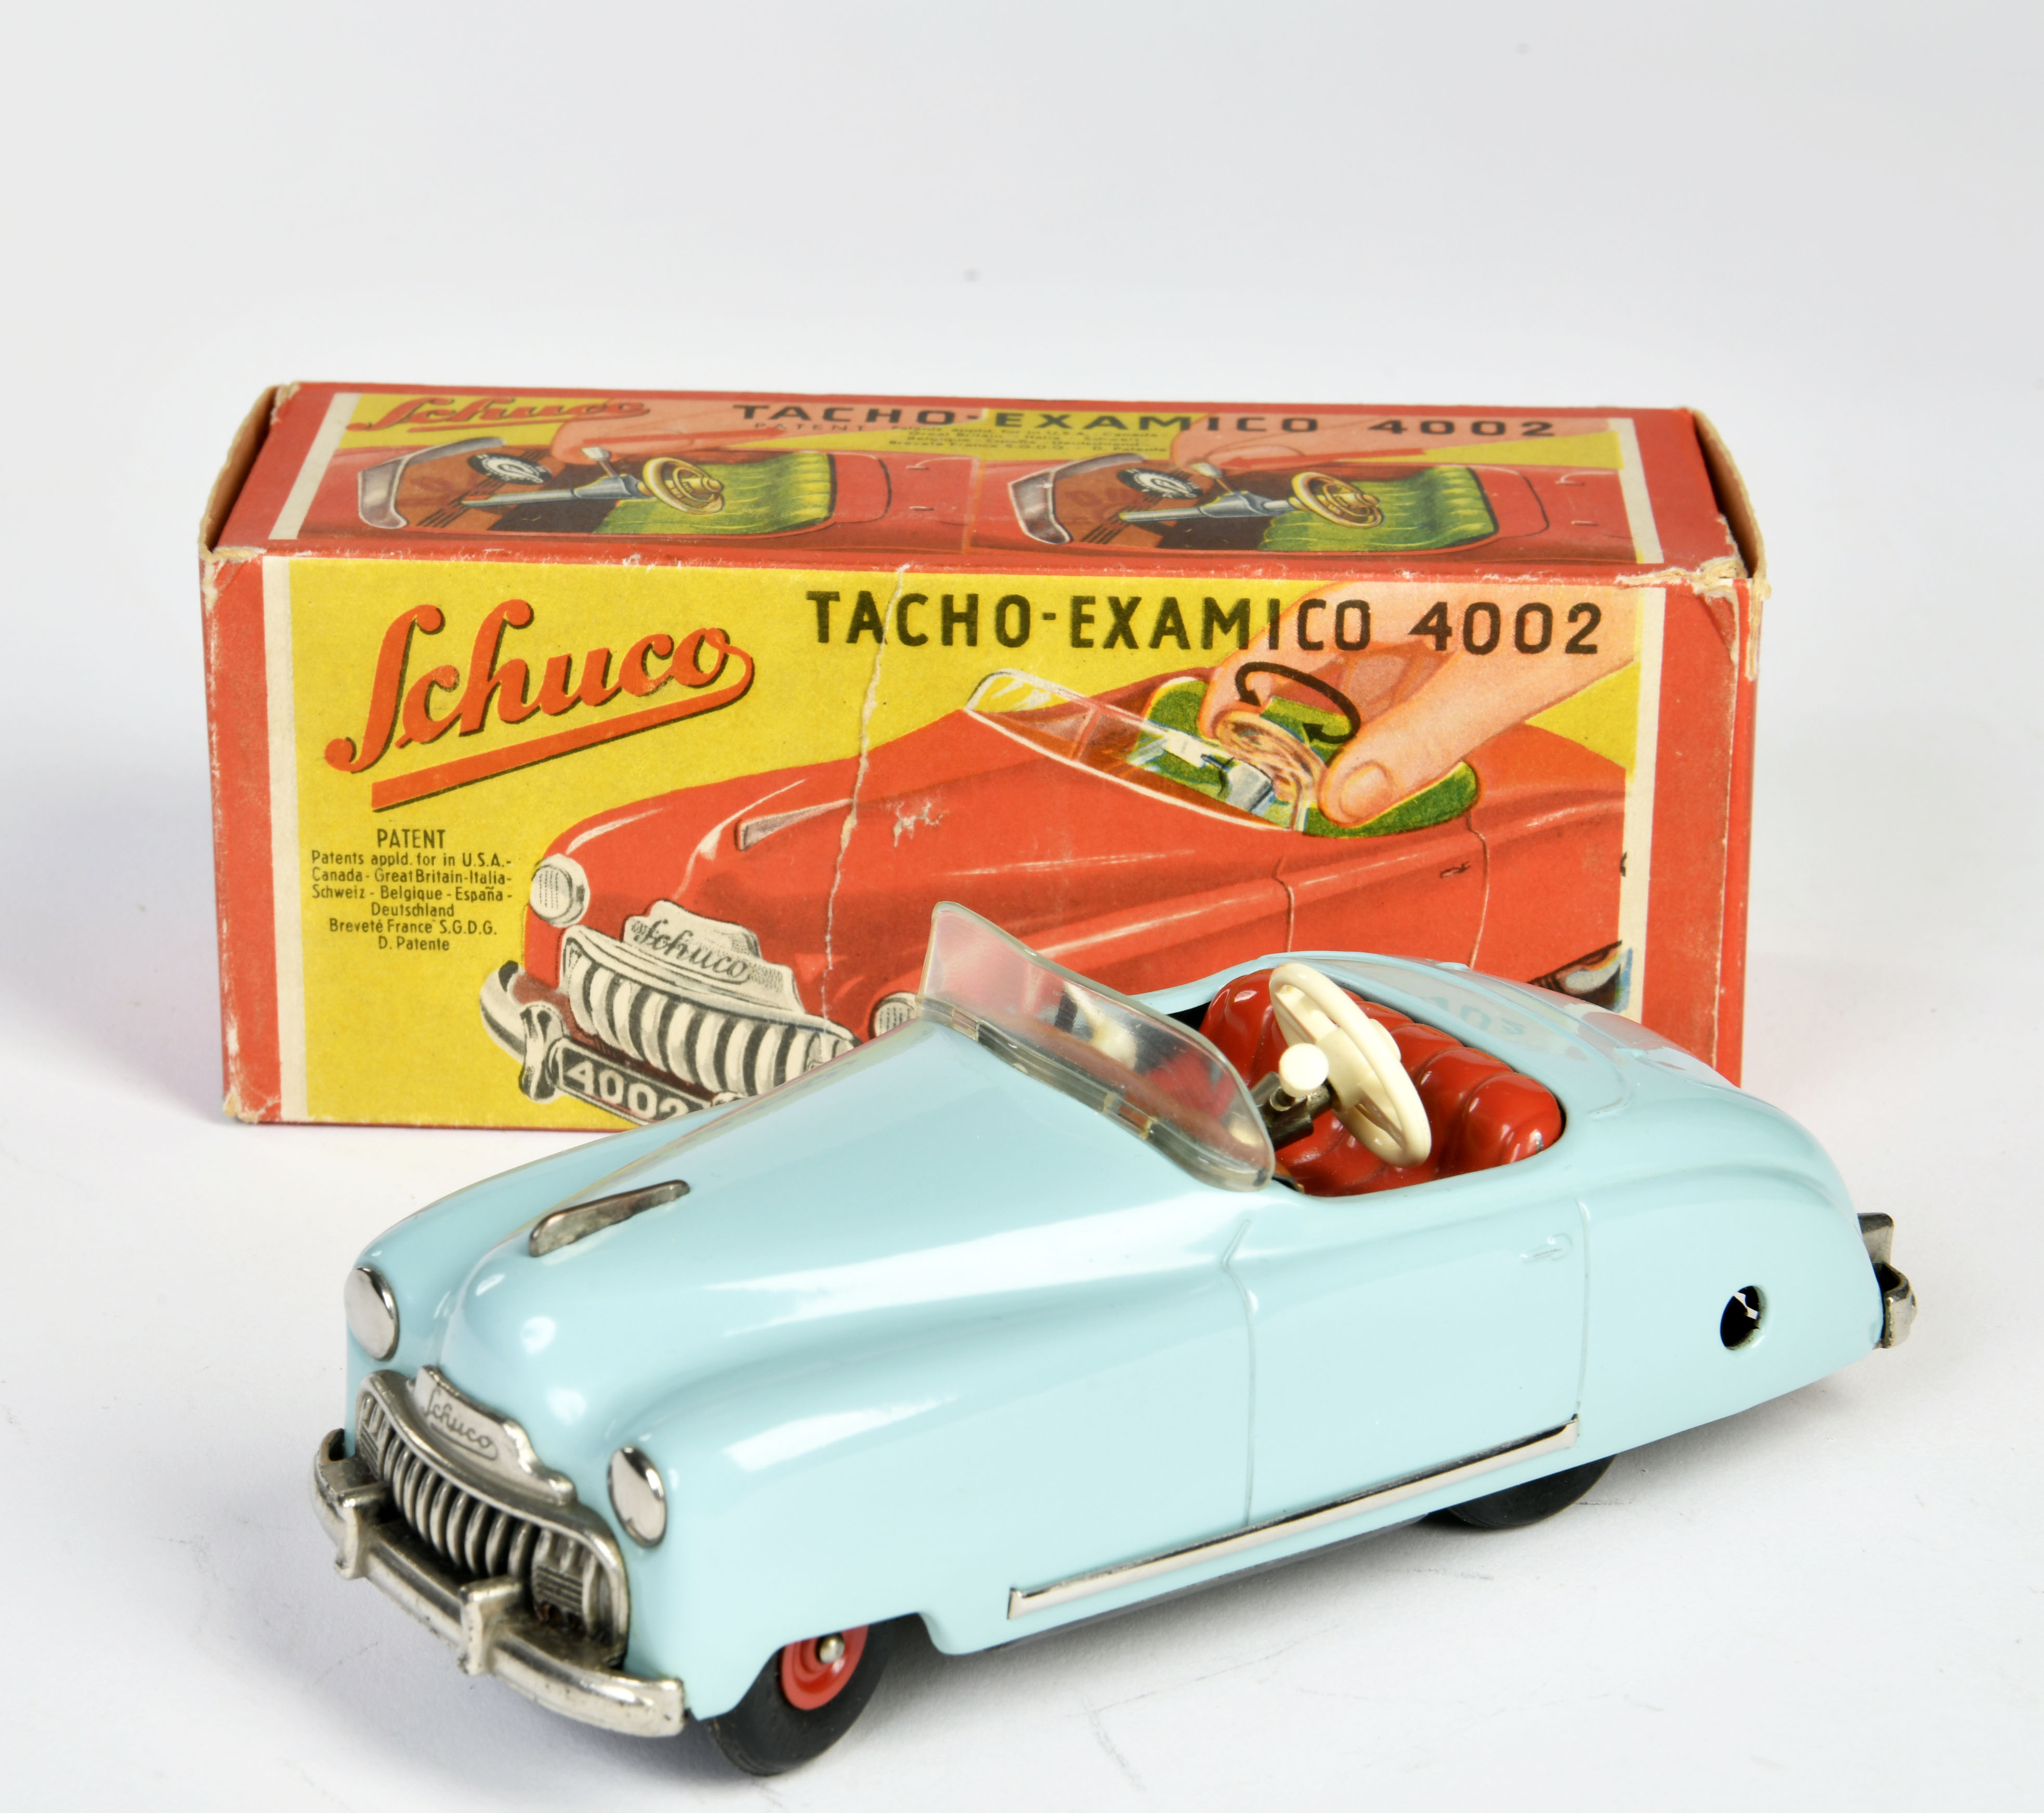 Schuco, Tacho Examico 4002, US Z. Germany, 16 cm, tin, cw ok, box C 1-, C 1